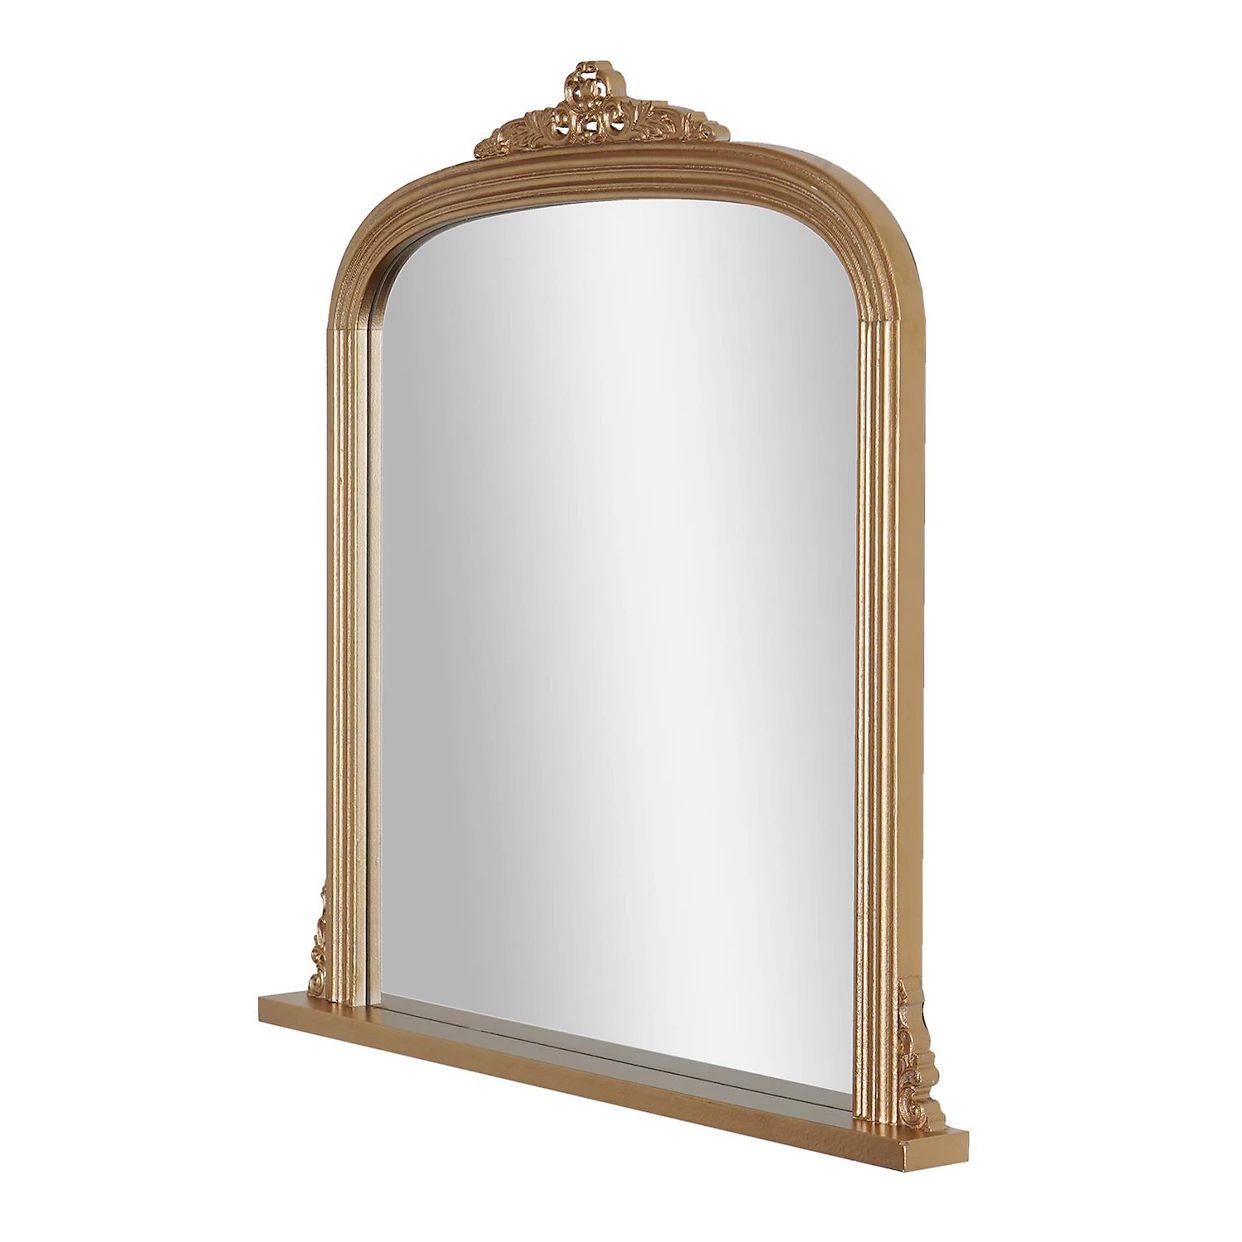 Head West Antique Brass Ornate Wall Mirror | Kohls | Kohl's